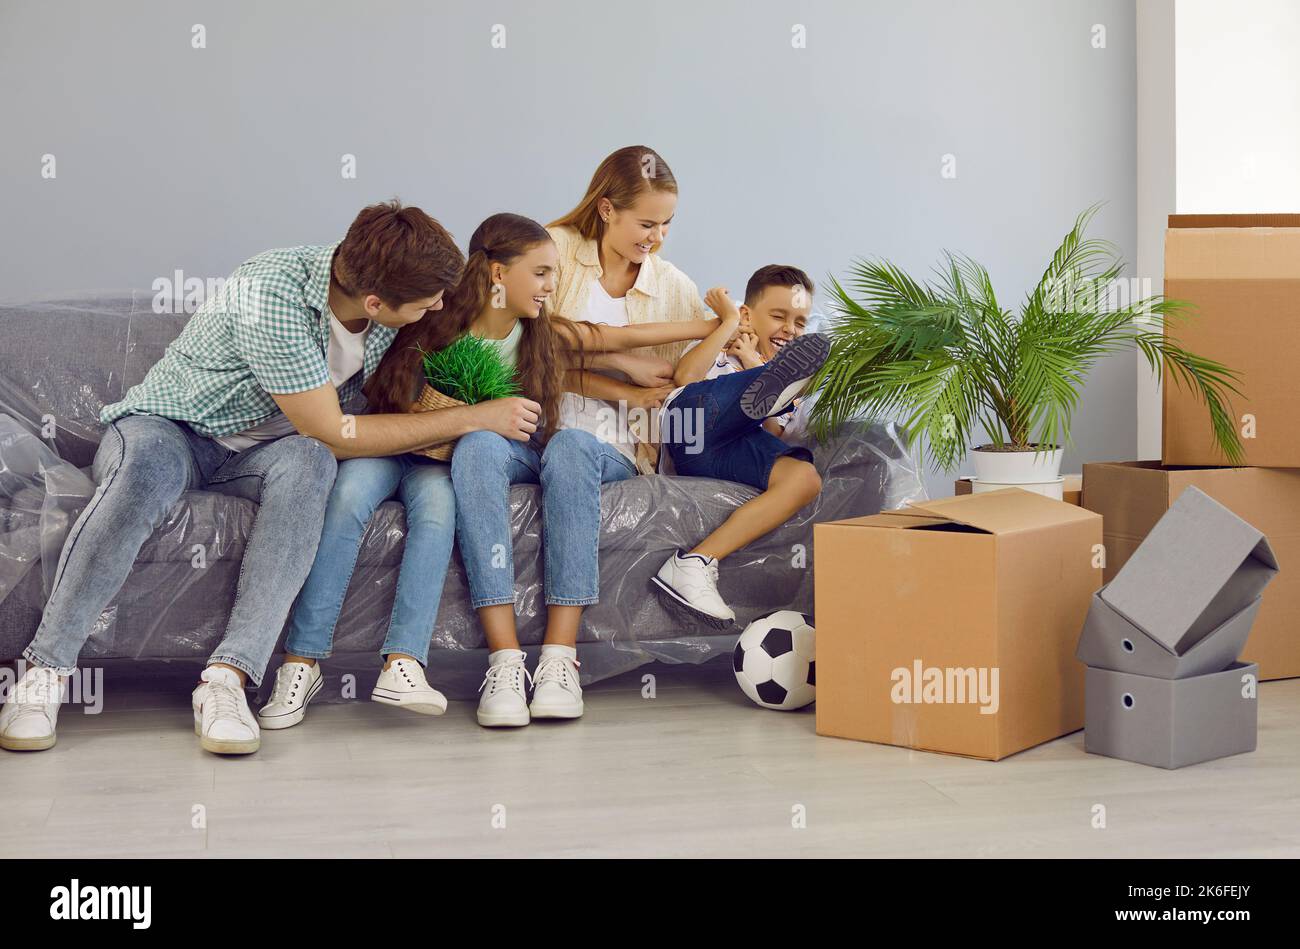 La famiglia giovane con i bambini che stanno trasferendosi alla nuova casa prenda la rottura, divertitevi e fool intorno. Foto Stock